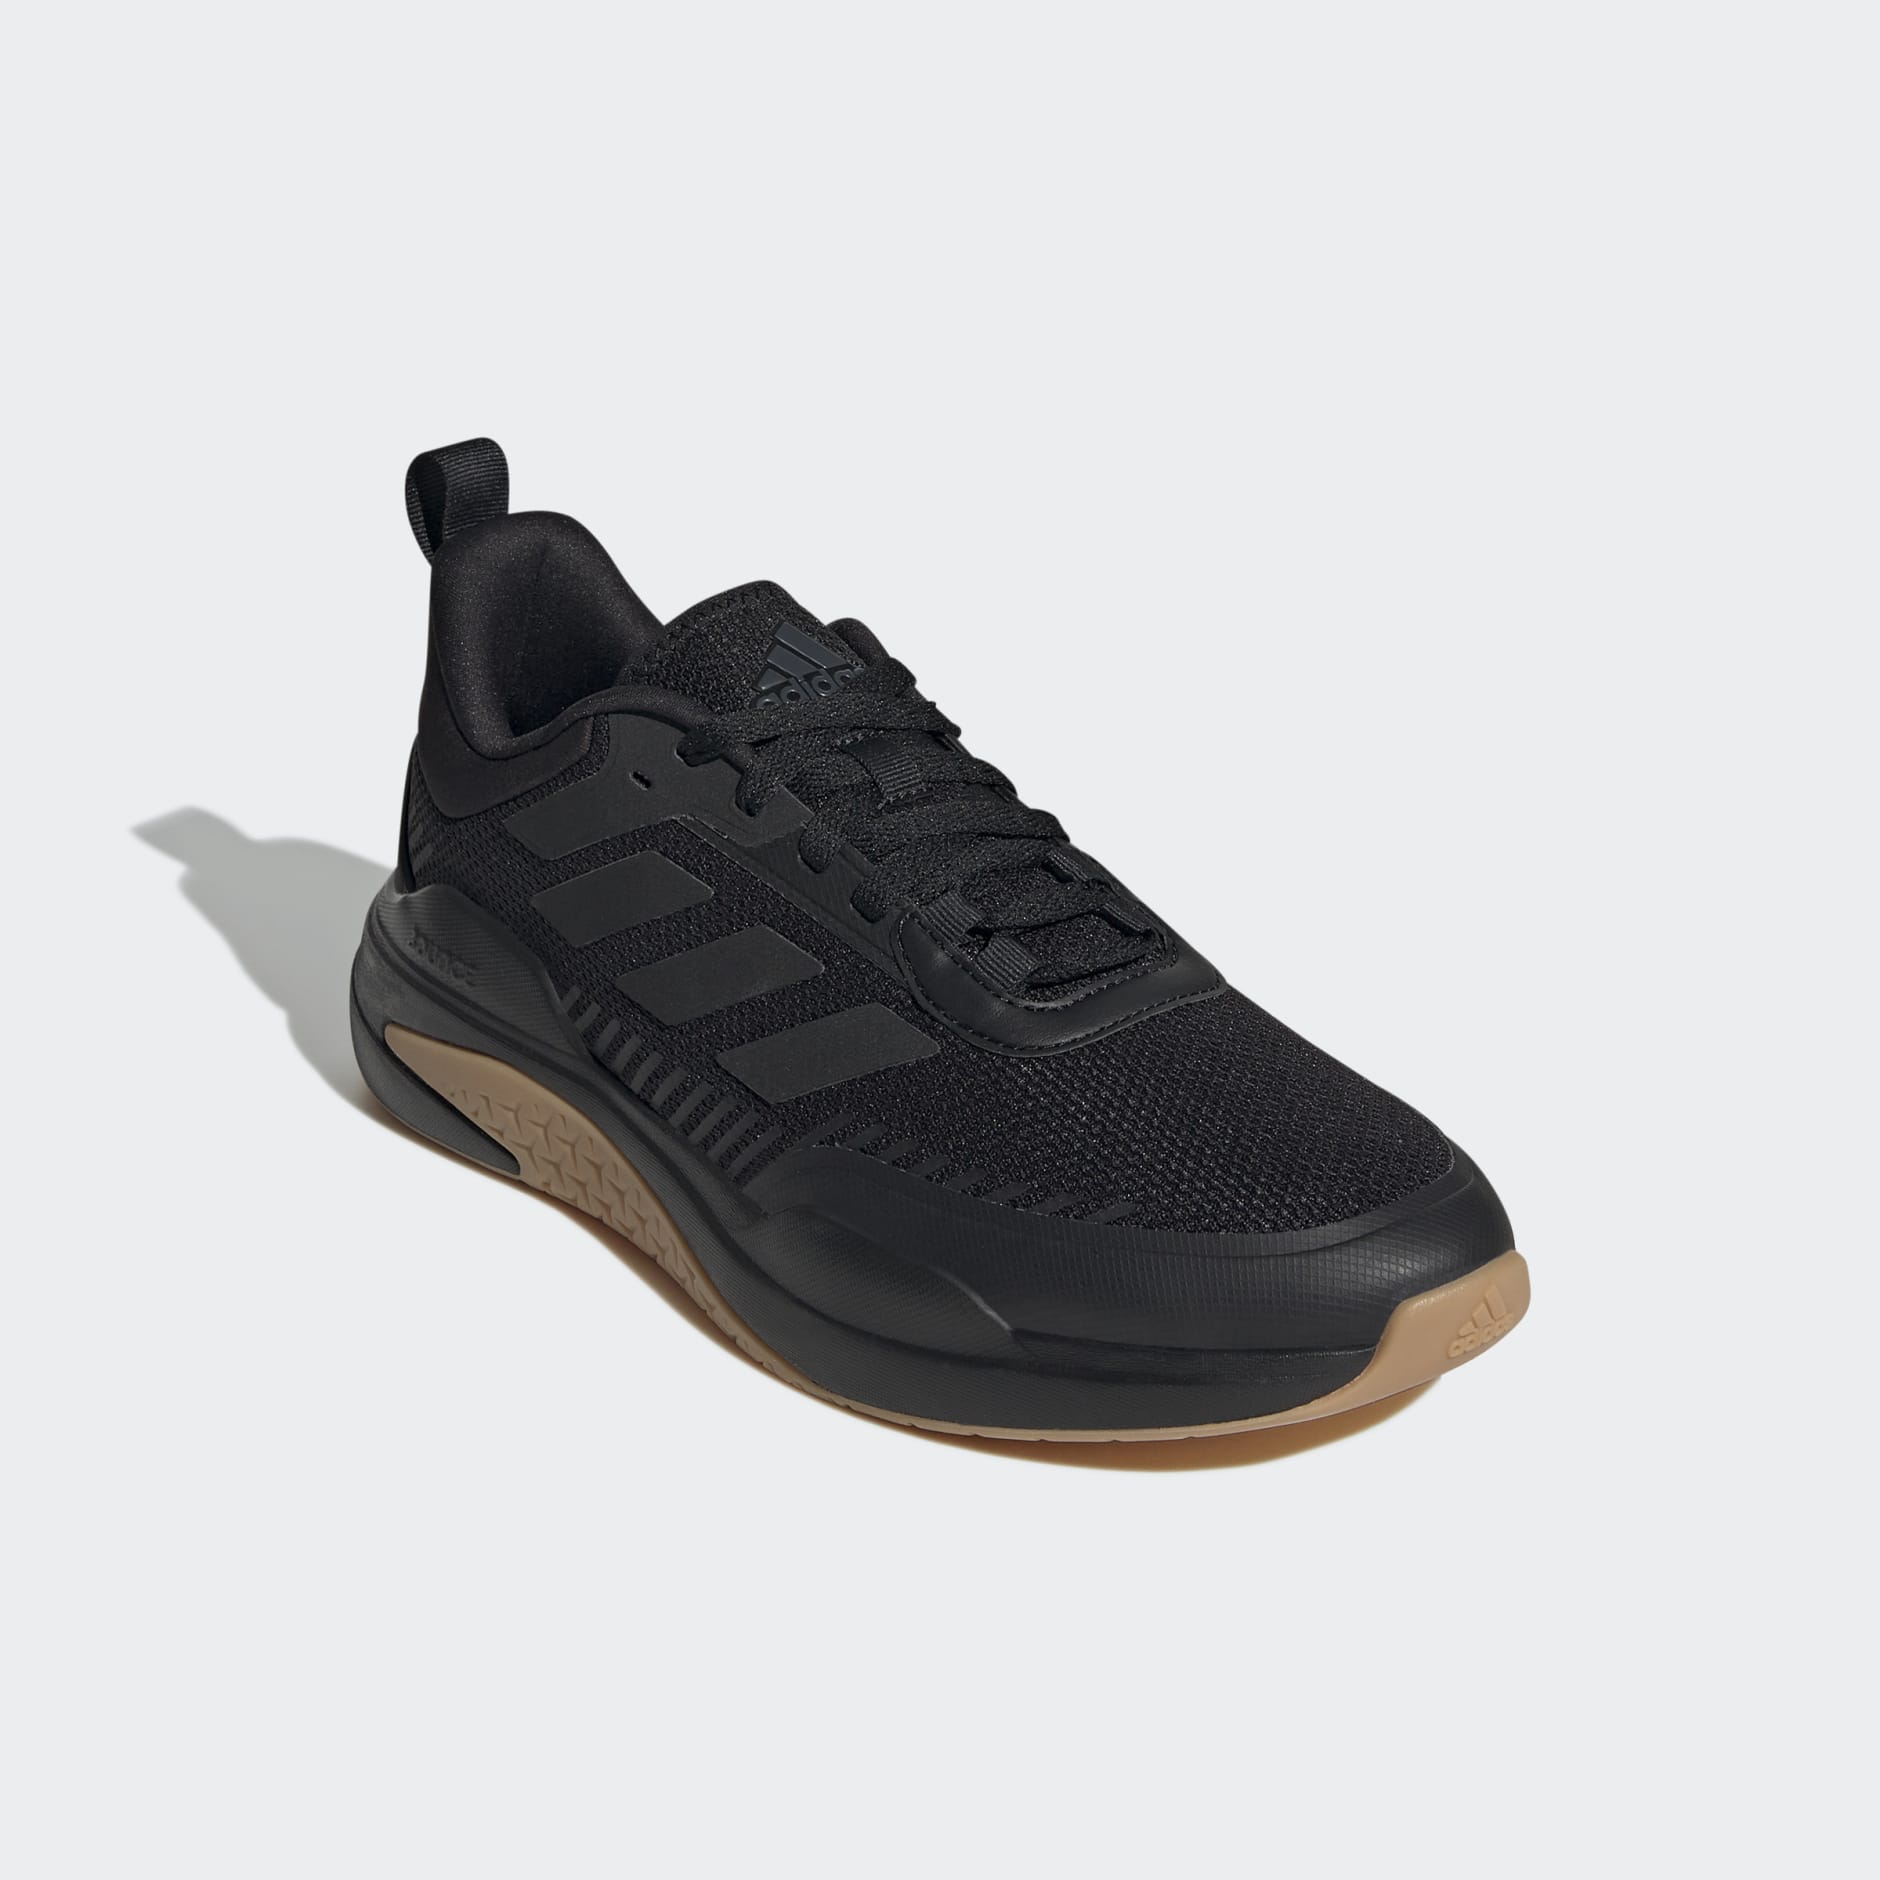 adidas Trainer V Shoes - Black adidas LK